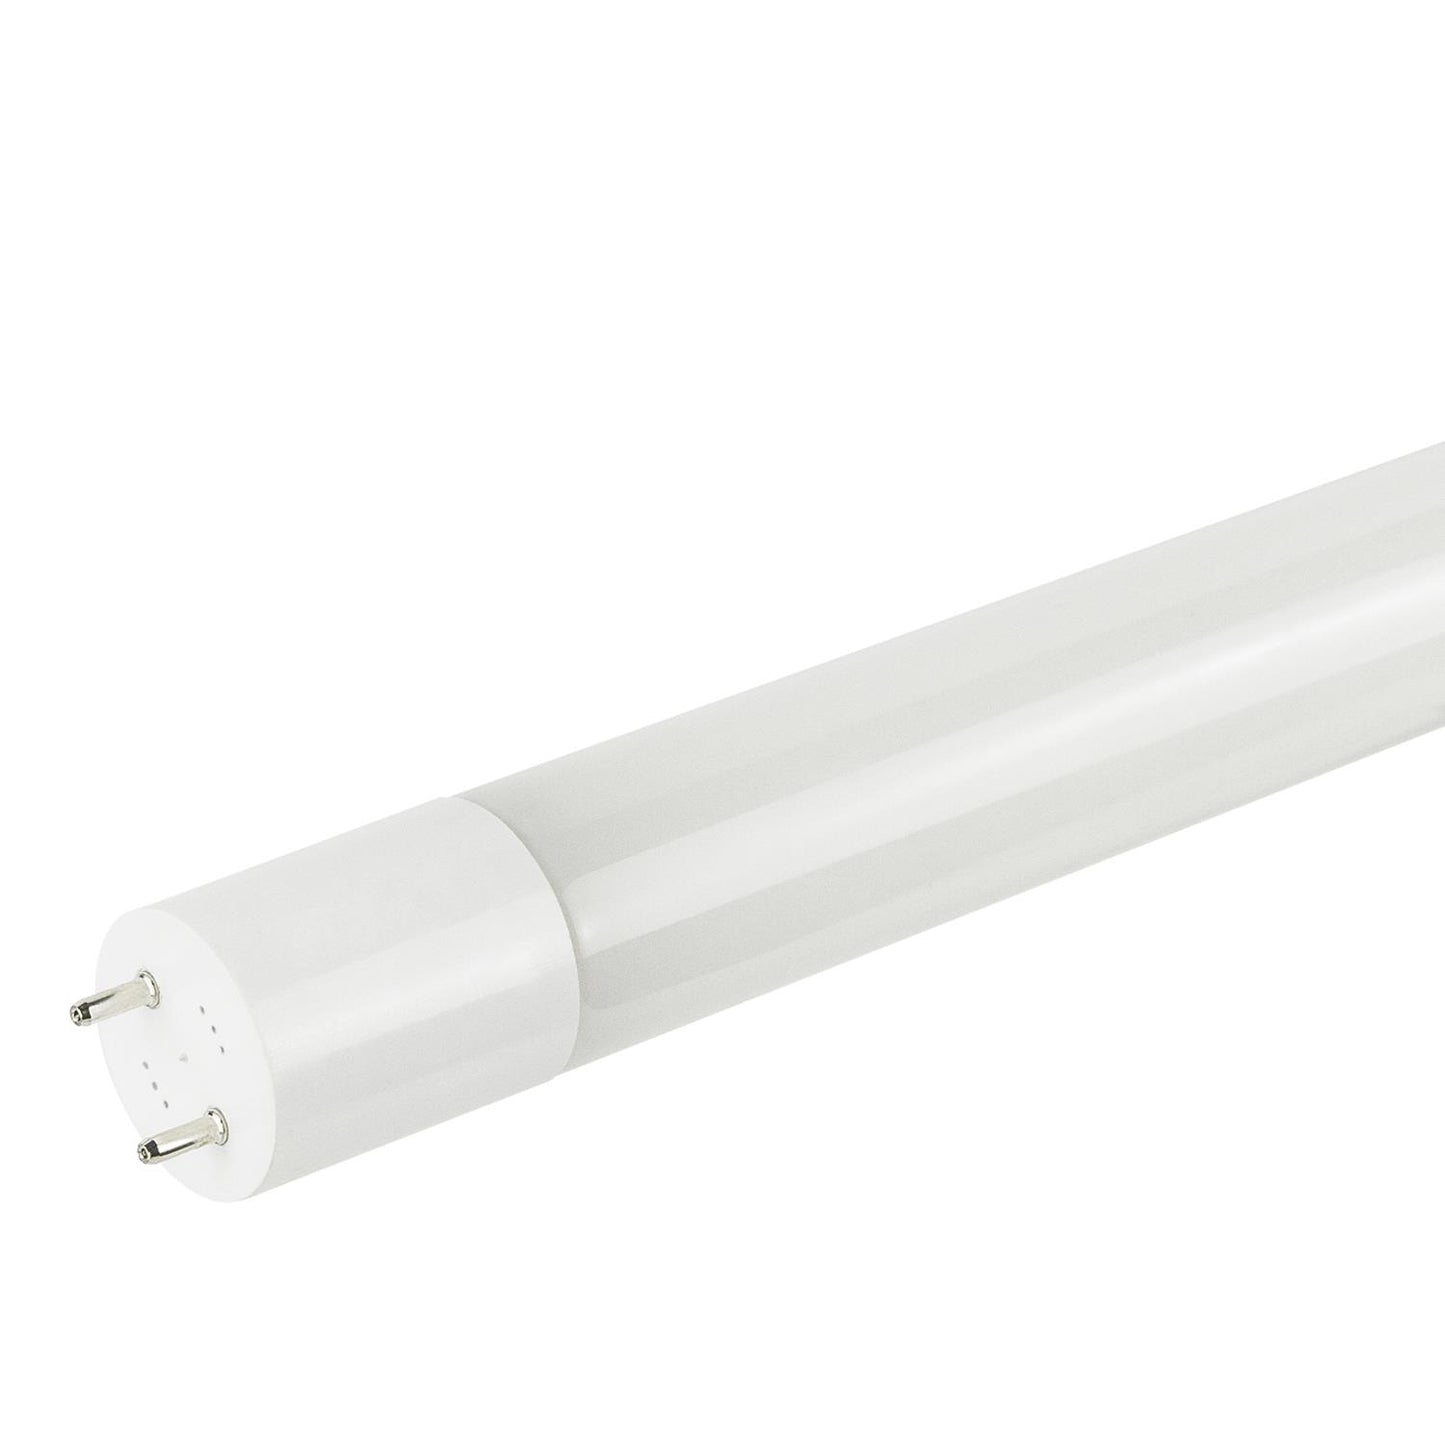 Sunlite T8/LED/IS/4'/12W/50K/PPS 12 Watt T8 Lamp Medium Bi-Pin (G13) Base Super White